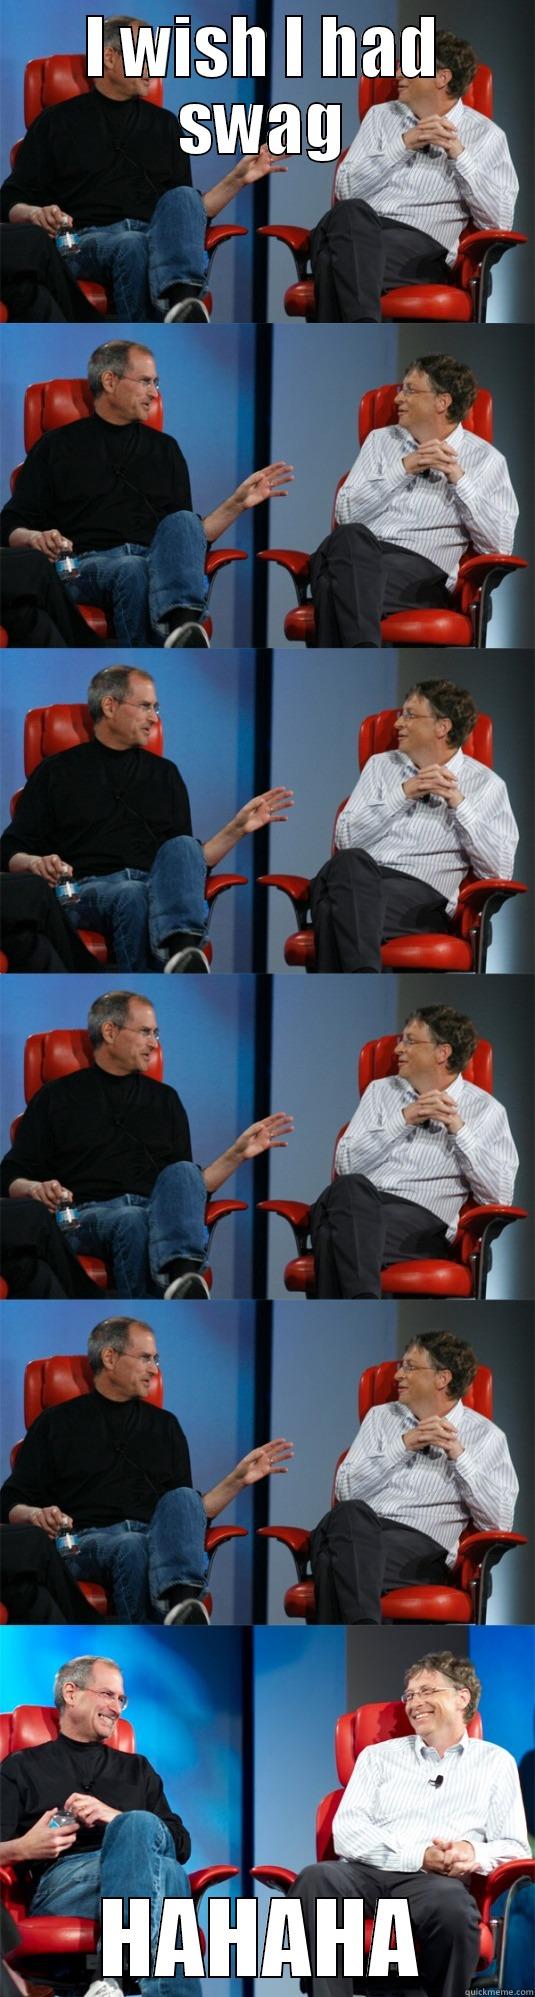 Nerds rule the world - I WISH I HAD SWAG HAHAHA Steve Jobs vs Bill Gates